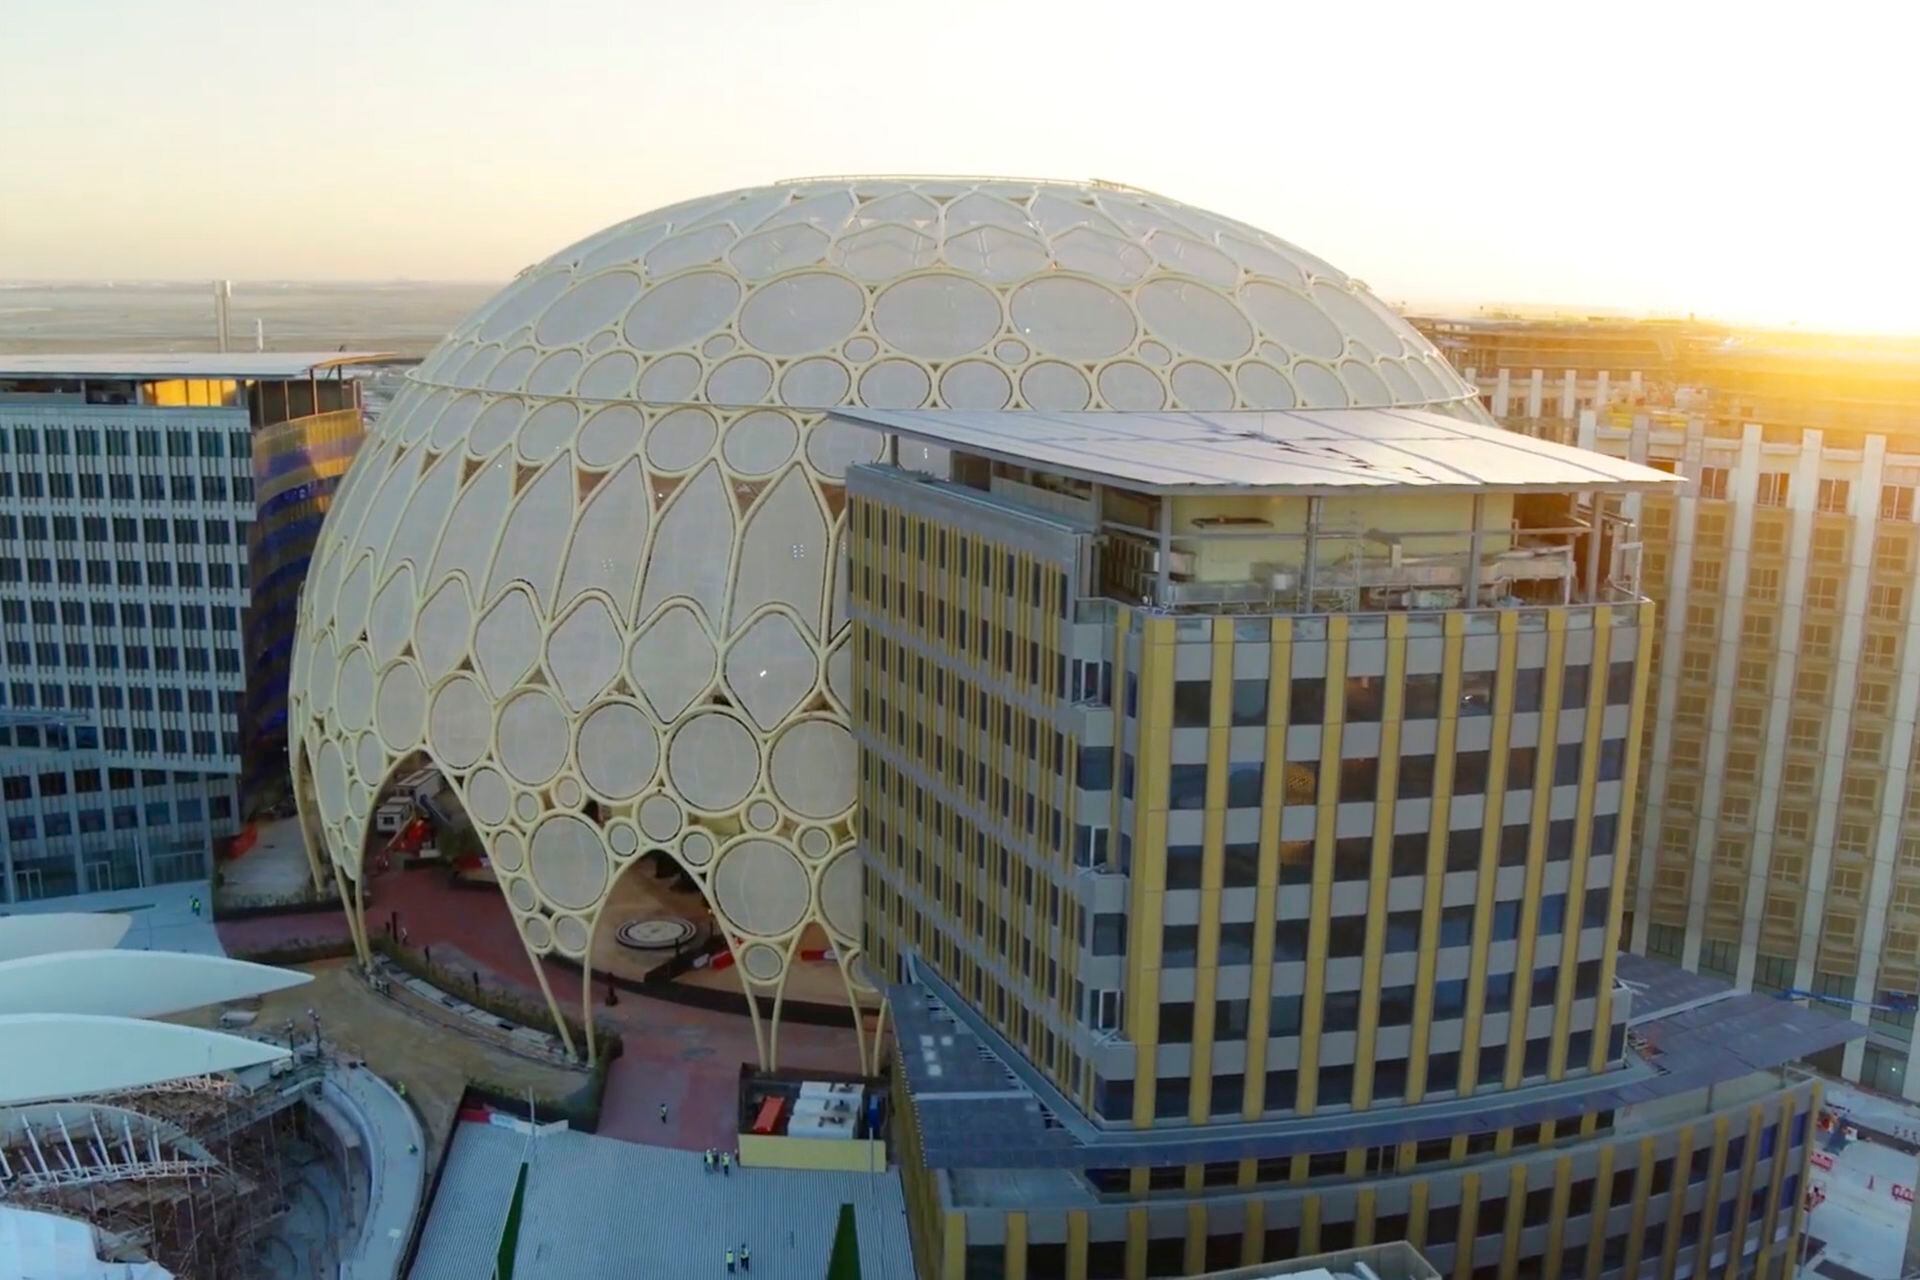 La cúpula se recubre con una malla textil de nombre Etfe, resistente al calor, la corrosión y los rayos UV gracias a su composición que incluye fibra de vidrio